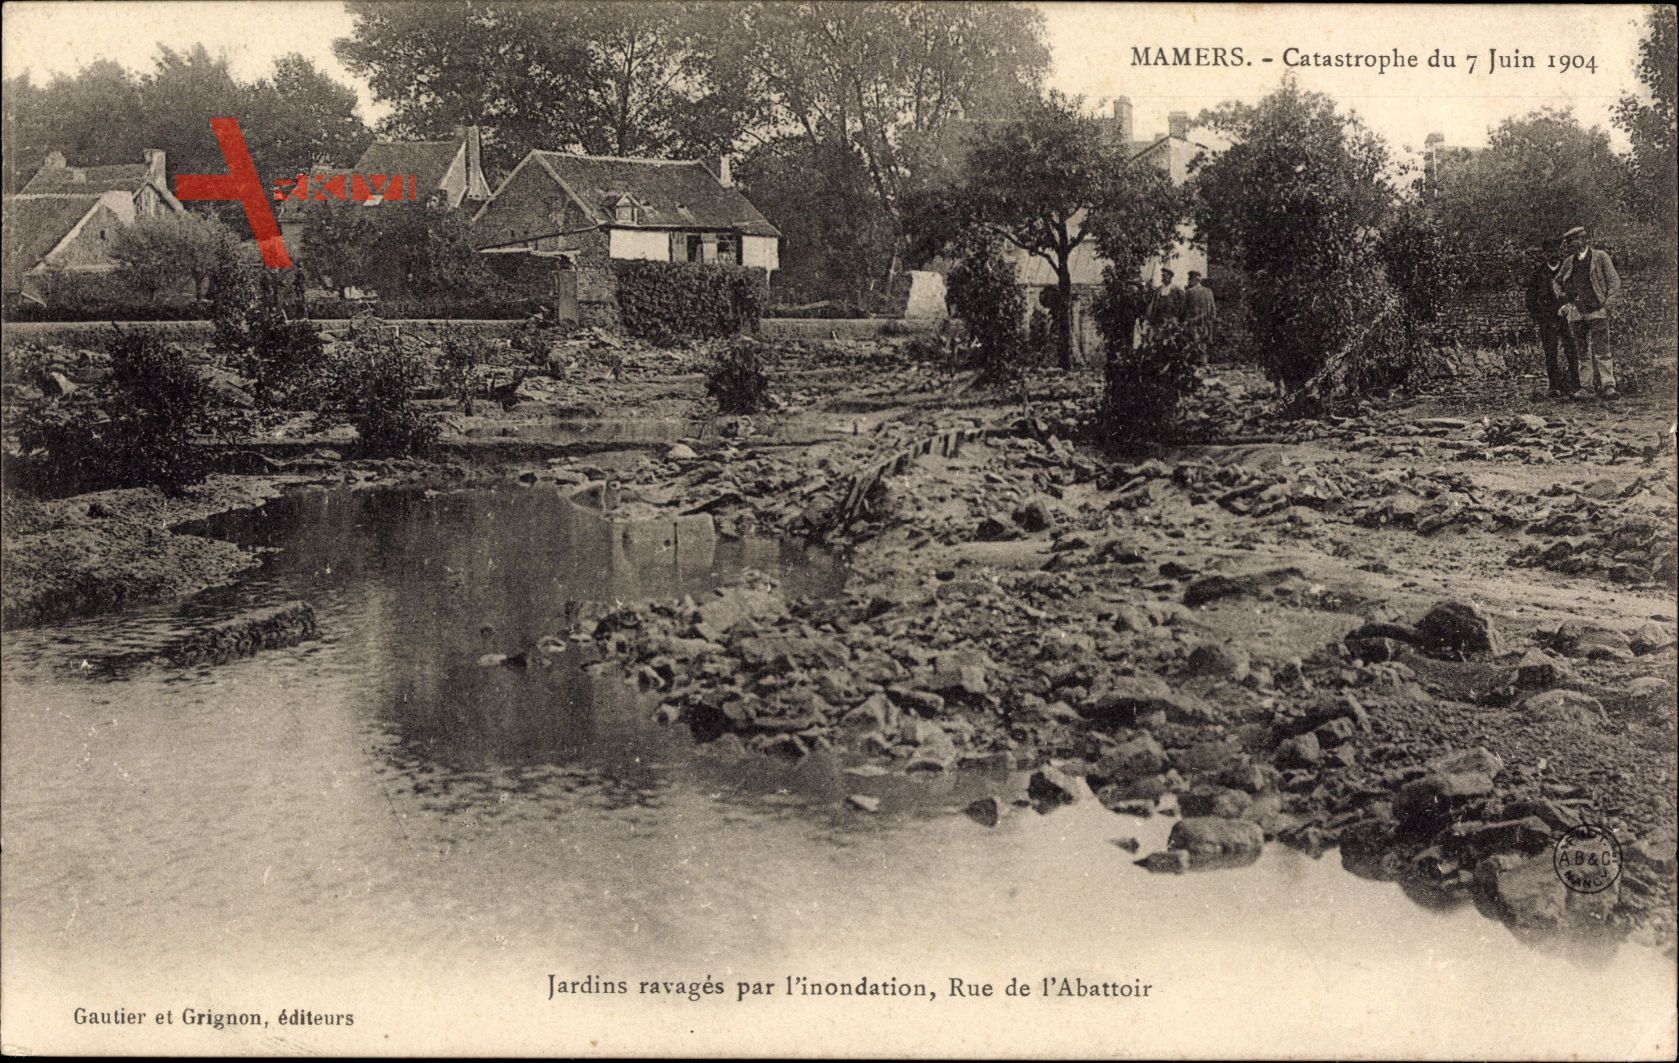 Mamers Sarthe, Catastrophe du 7 juin 1904, Jardins ravages par linondation